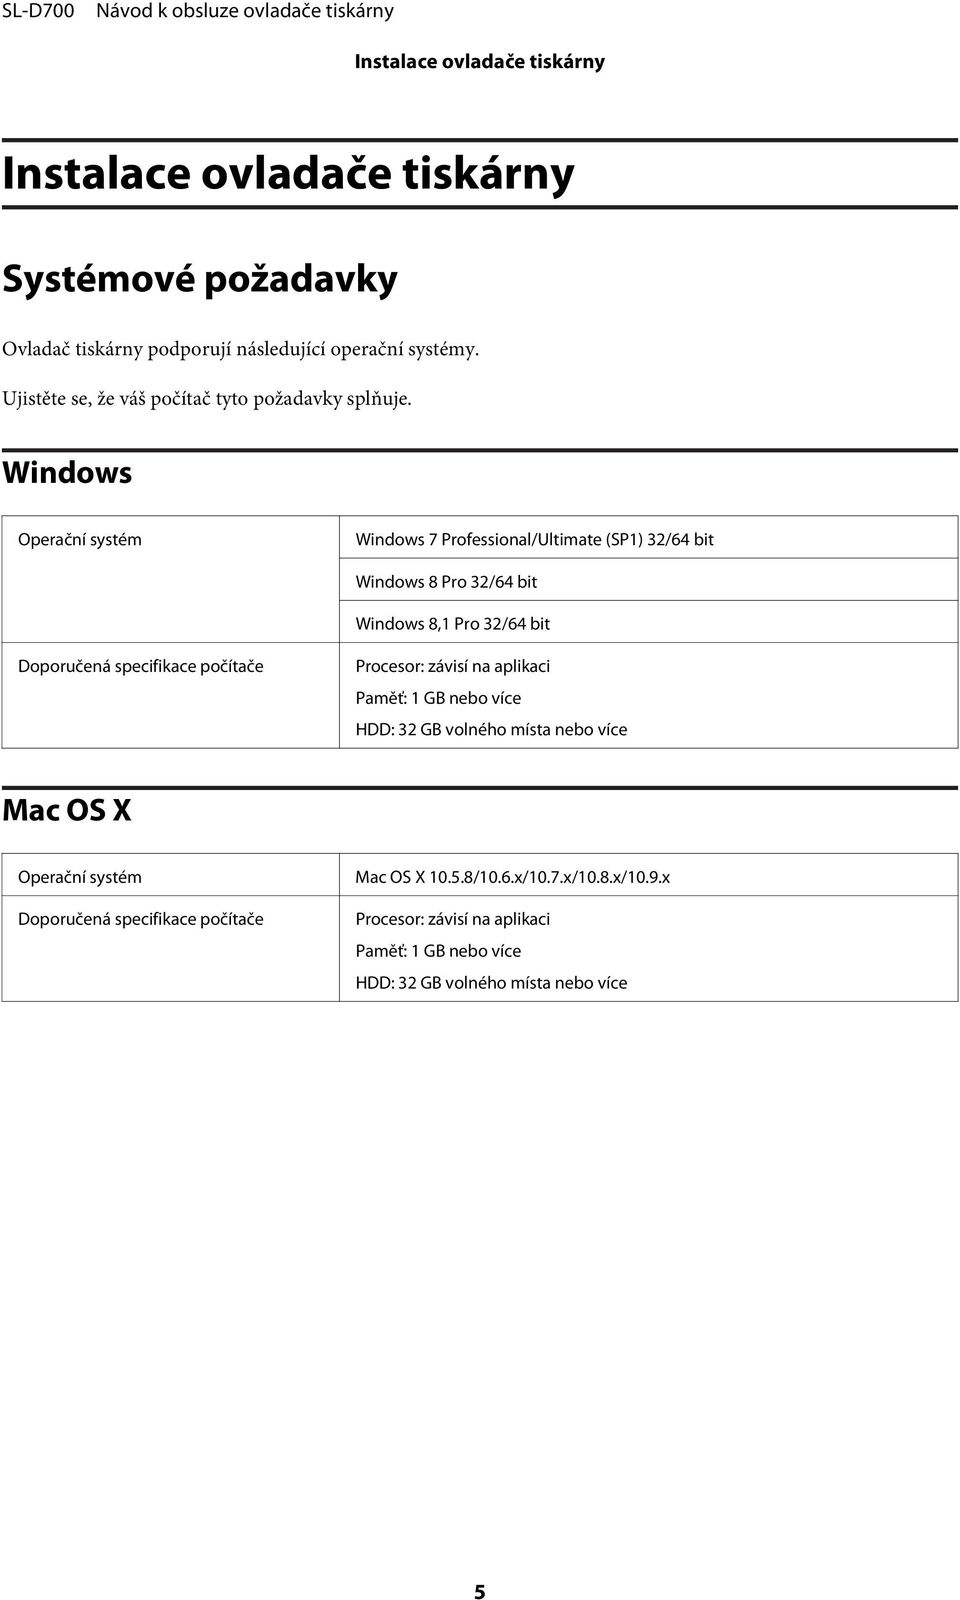 Windows Operační systém Windows 7 Professional/Ultimate (SP1) 32/64 bit Windows 8 Pro 32/64 bit Windows 8,1 Pro 32/64 bit Doporučená specifikace počítače